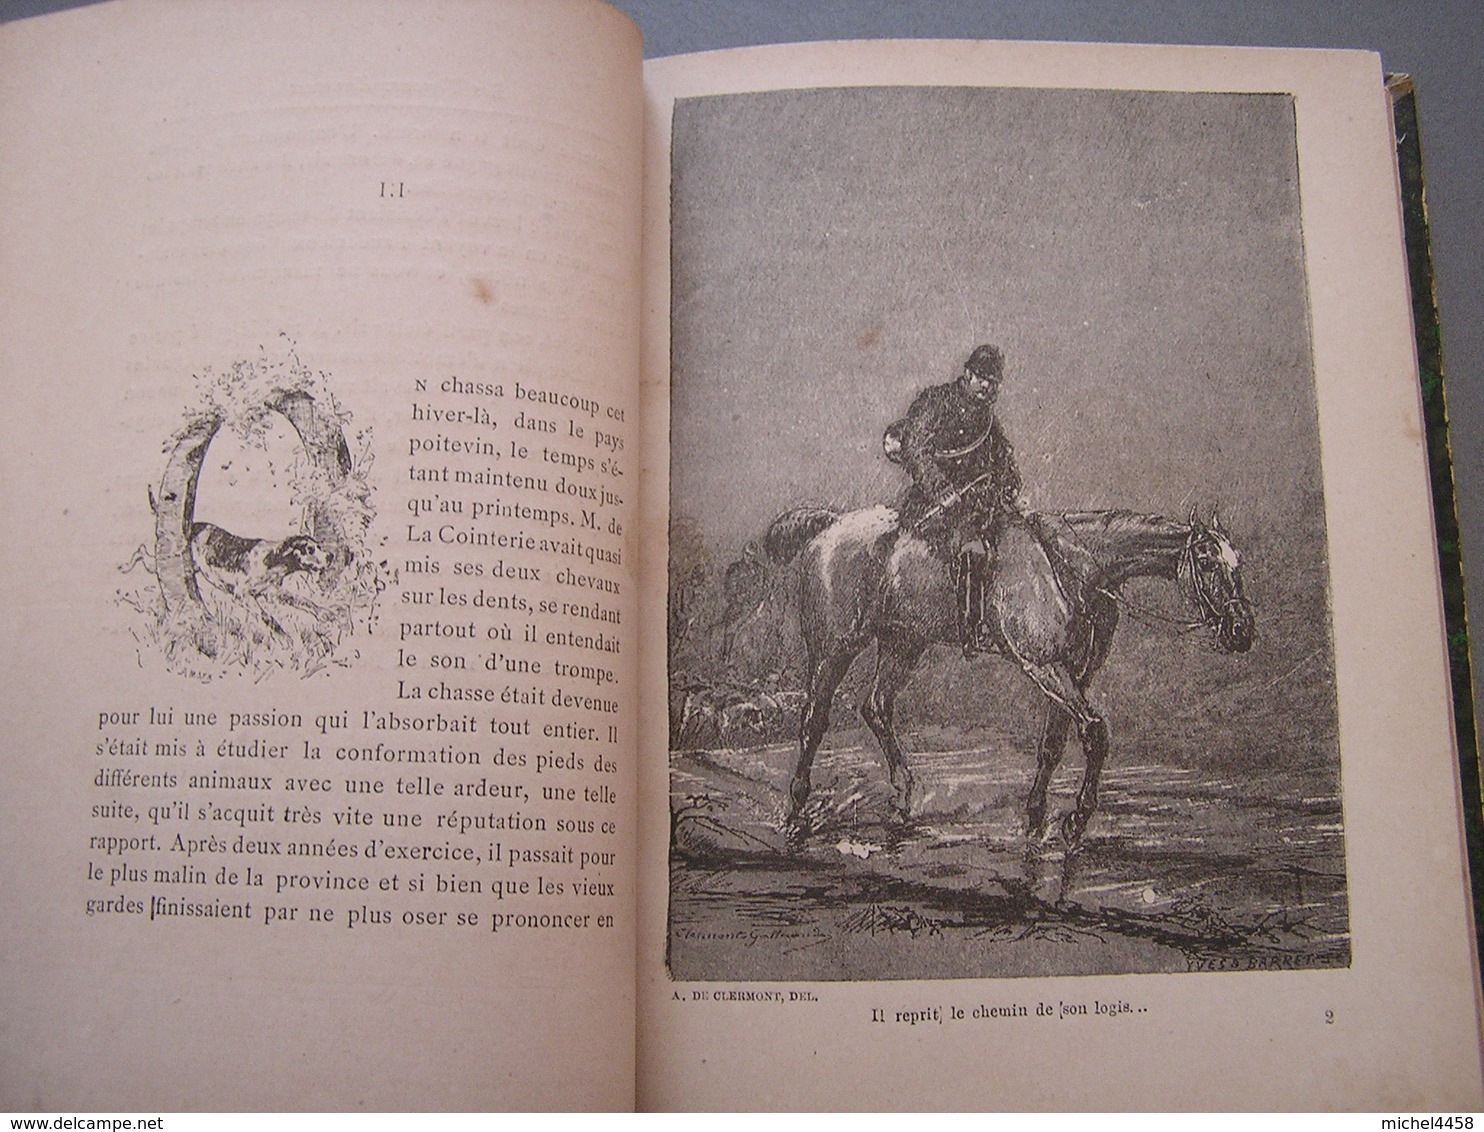 LES VENEURS ENNEMIS  Marquis Guy de Charnacé  Edition originale 1887 bibliothèque Pairault Vénerie Chasse à courre